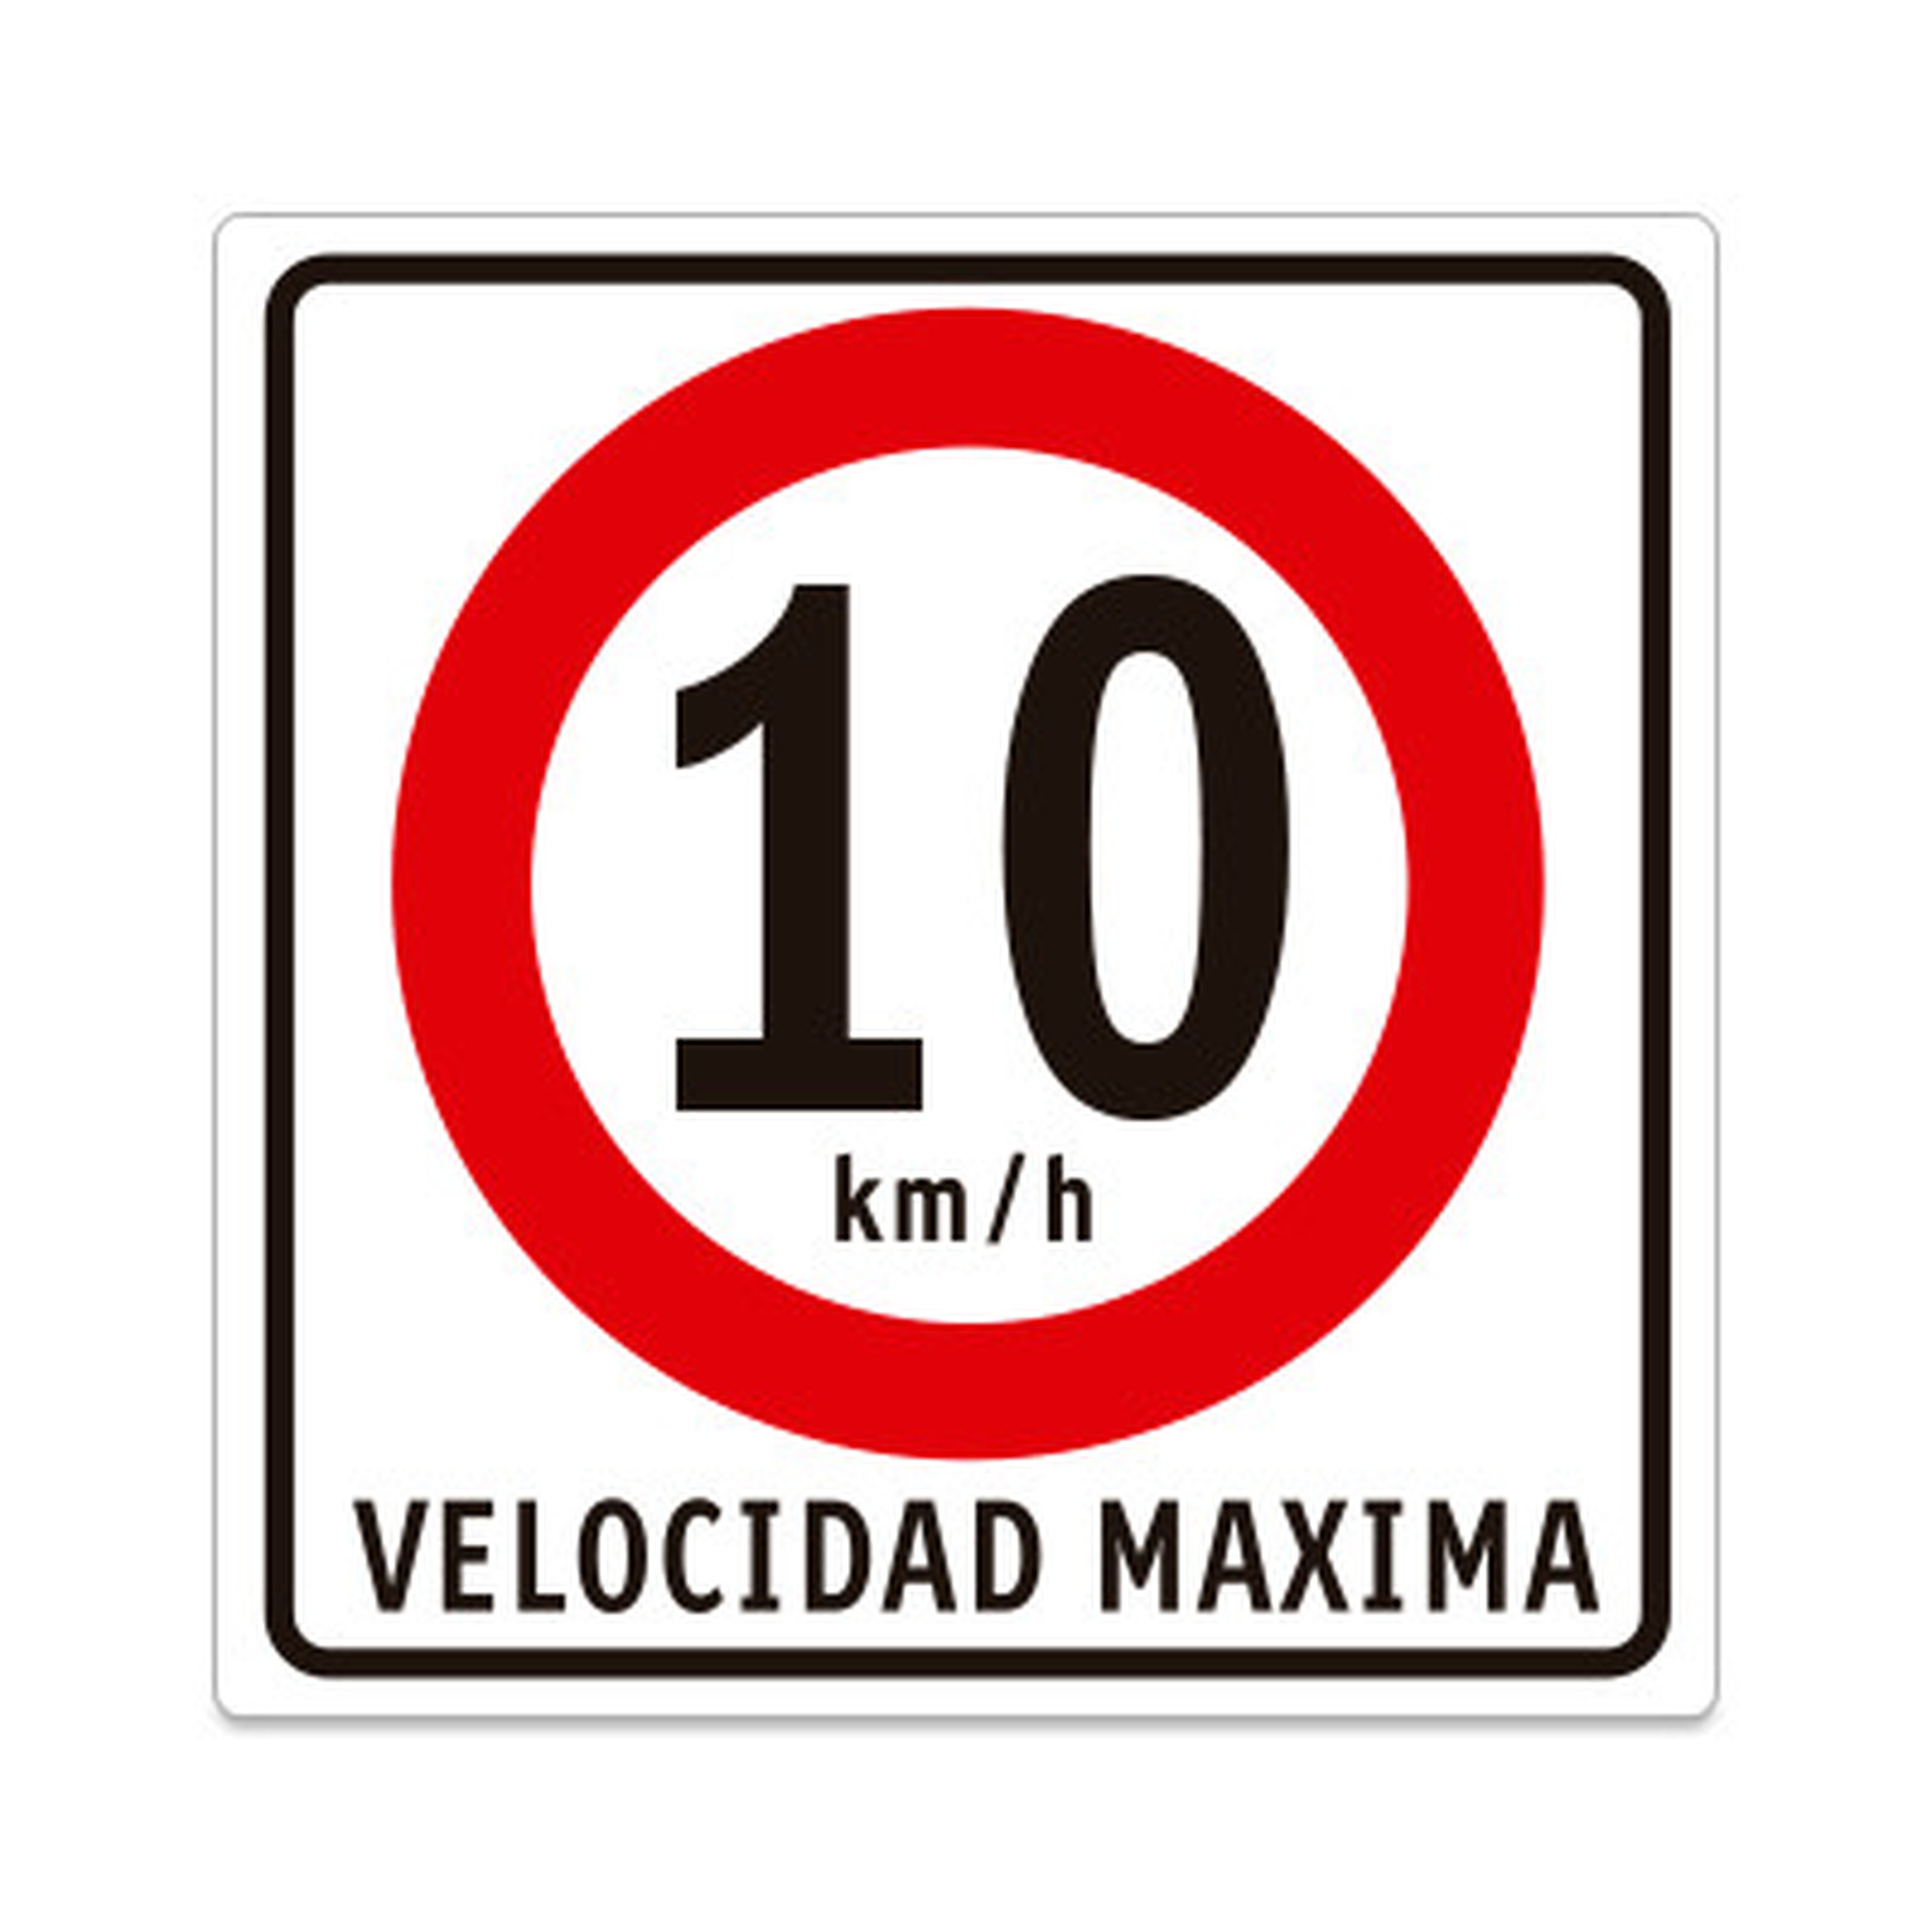 La ciudad española que ha limitado la velocidad a 10 km/h